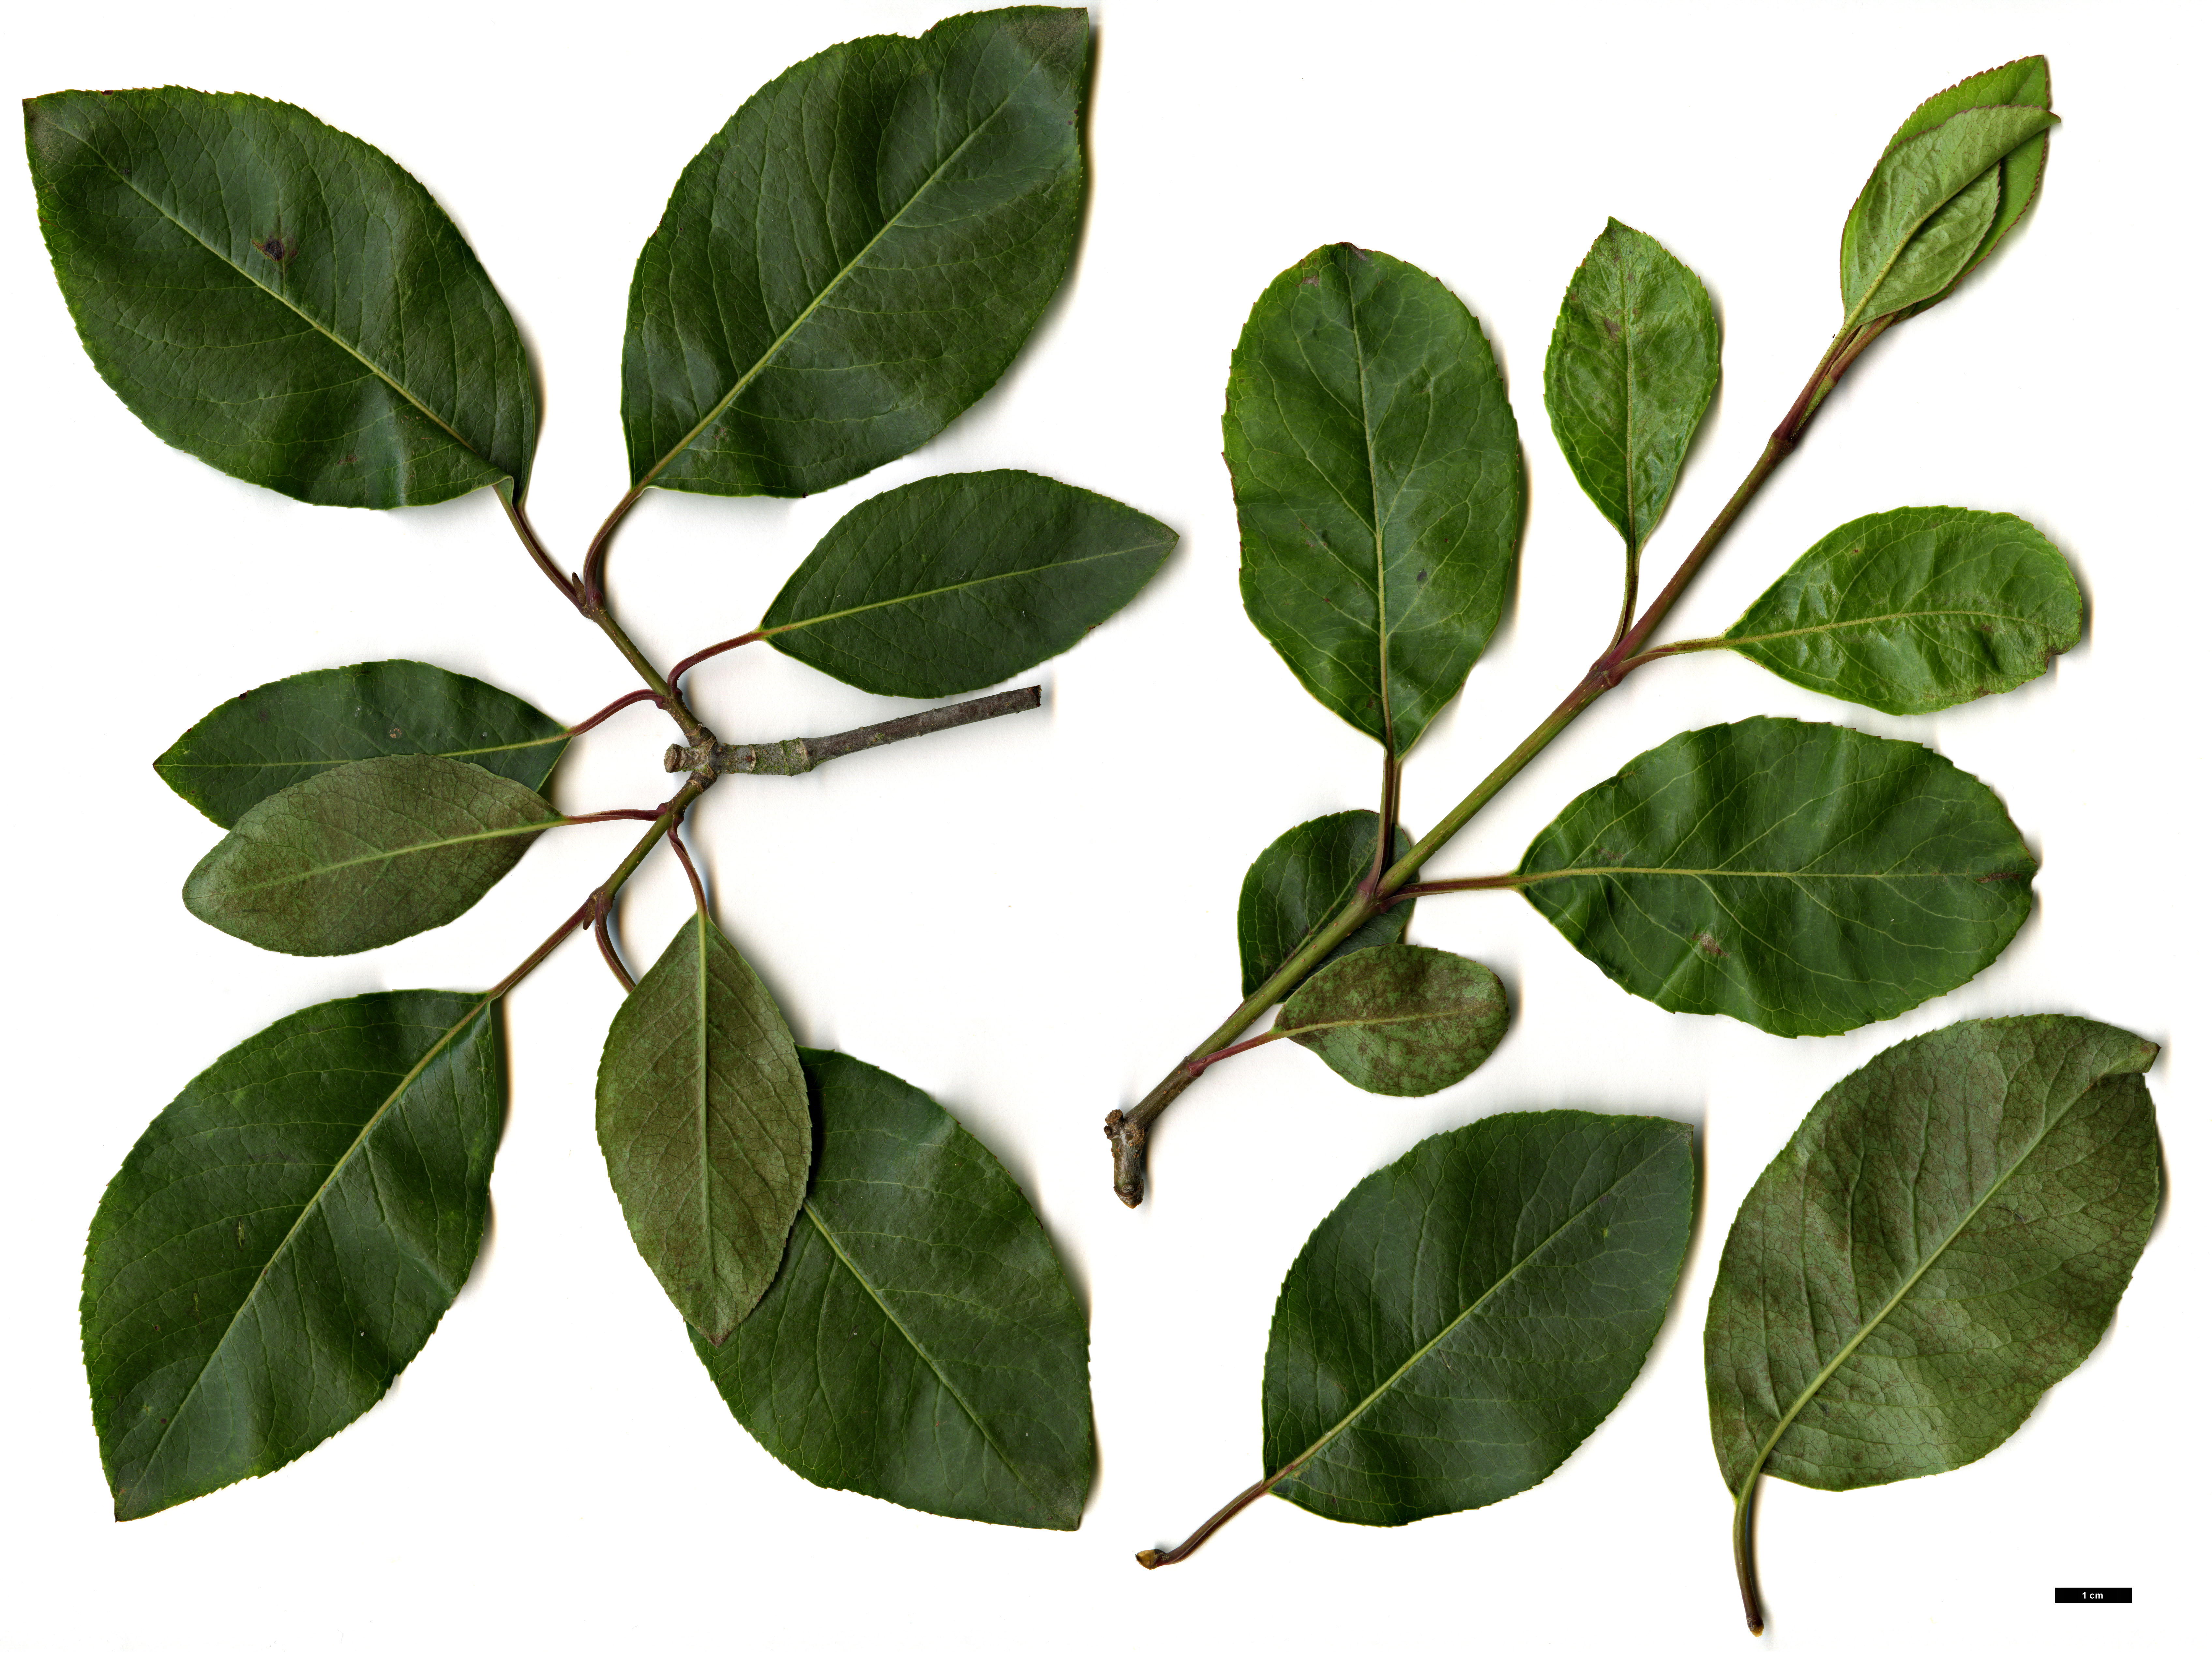 High resolution image: Family: Adoxaceae - Genus: Viburnum - Taxon: cassinoides